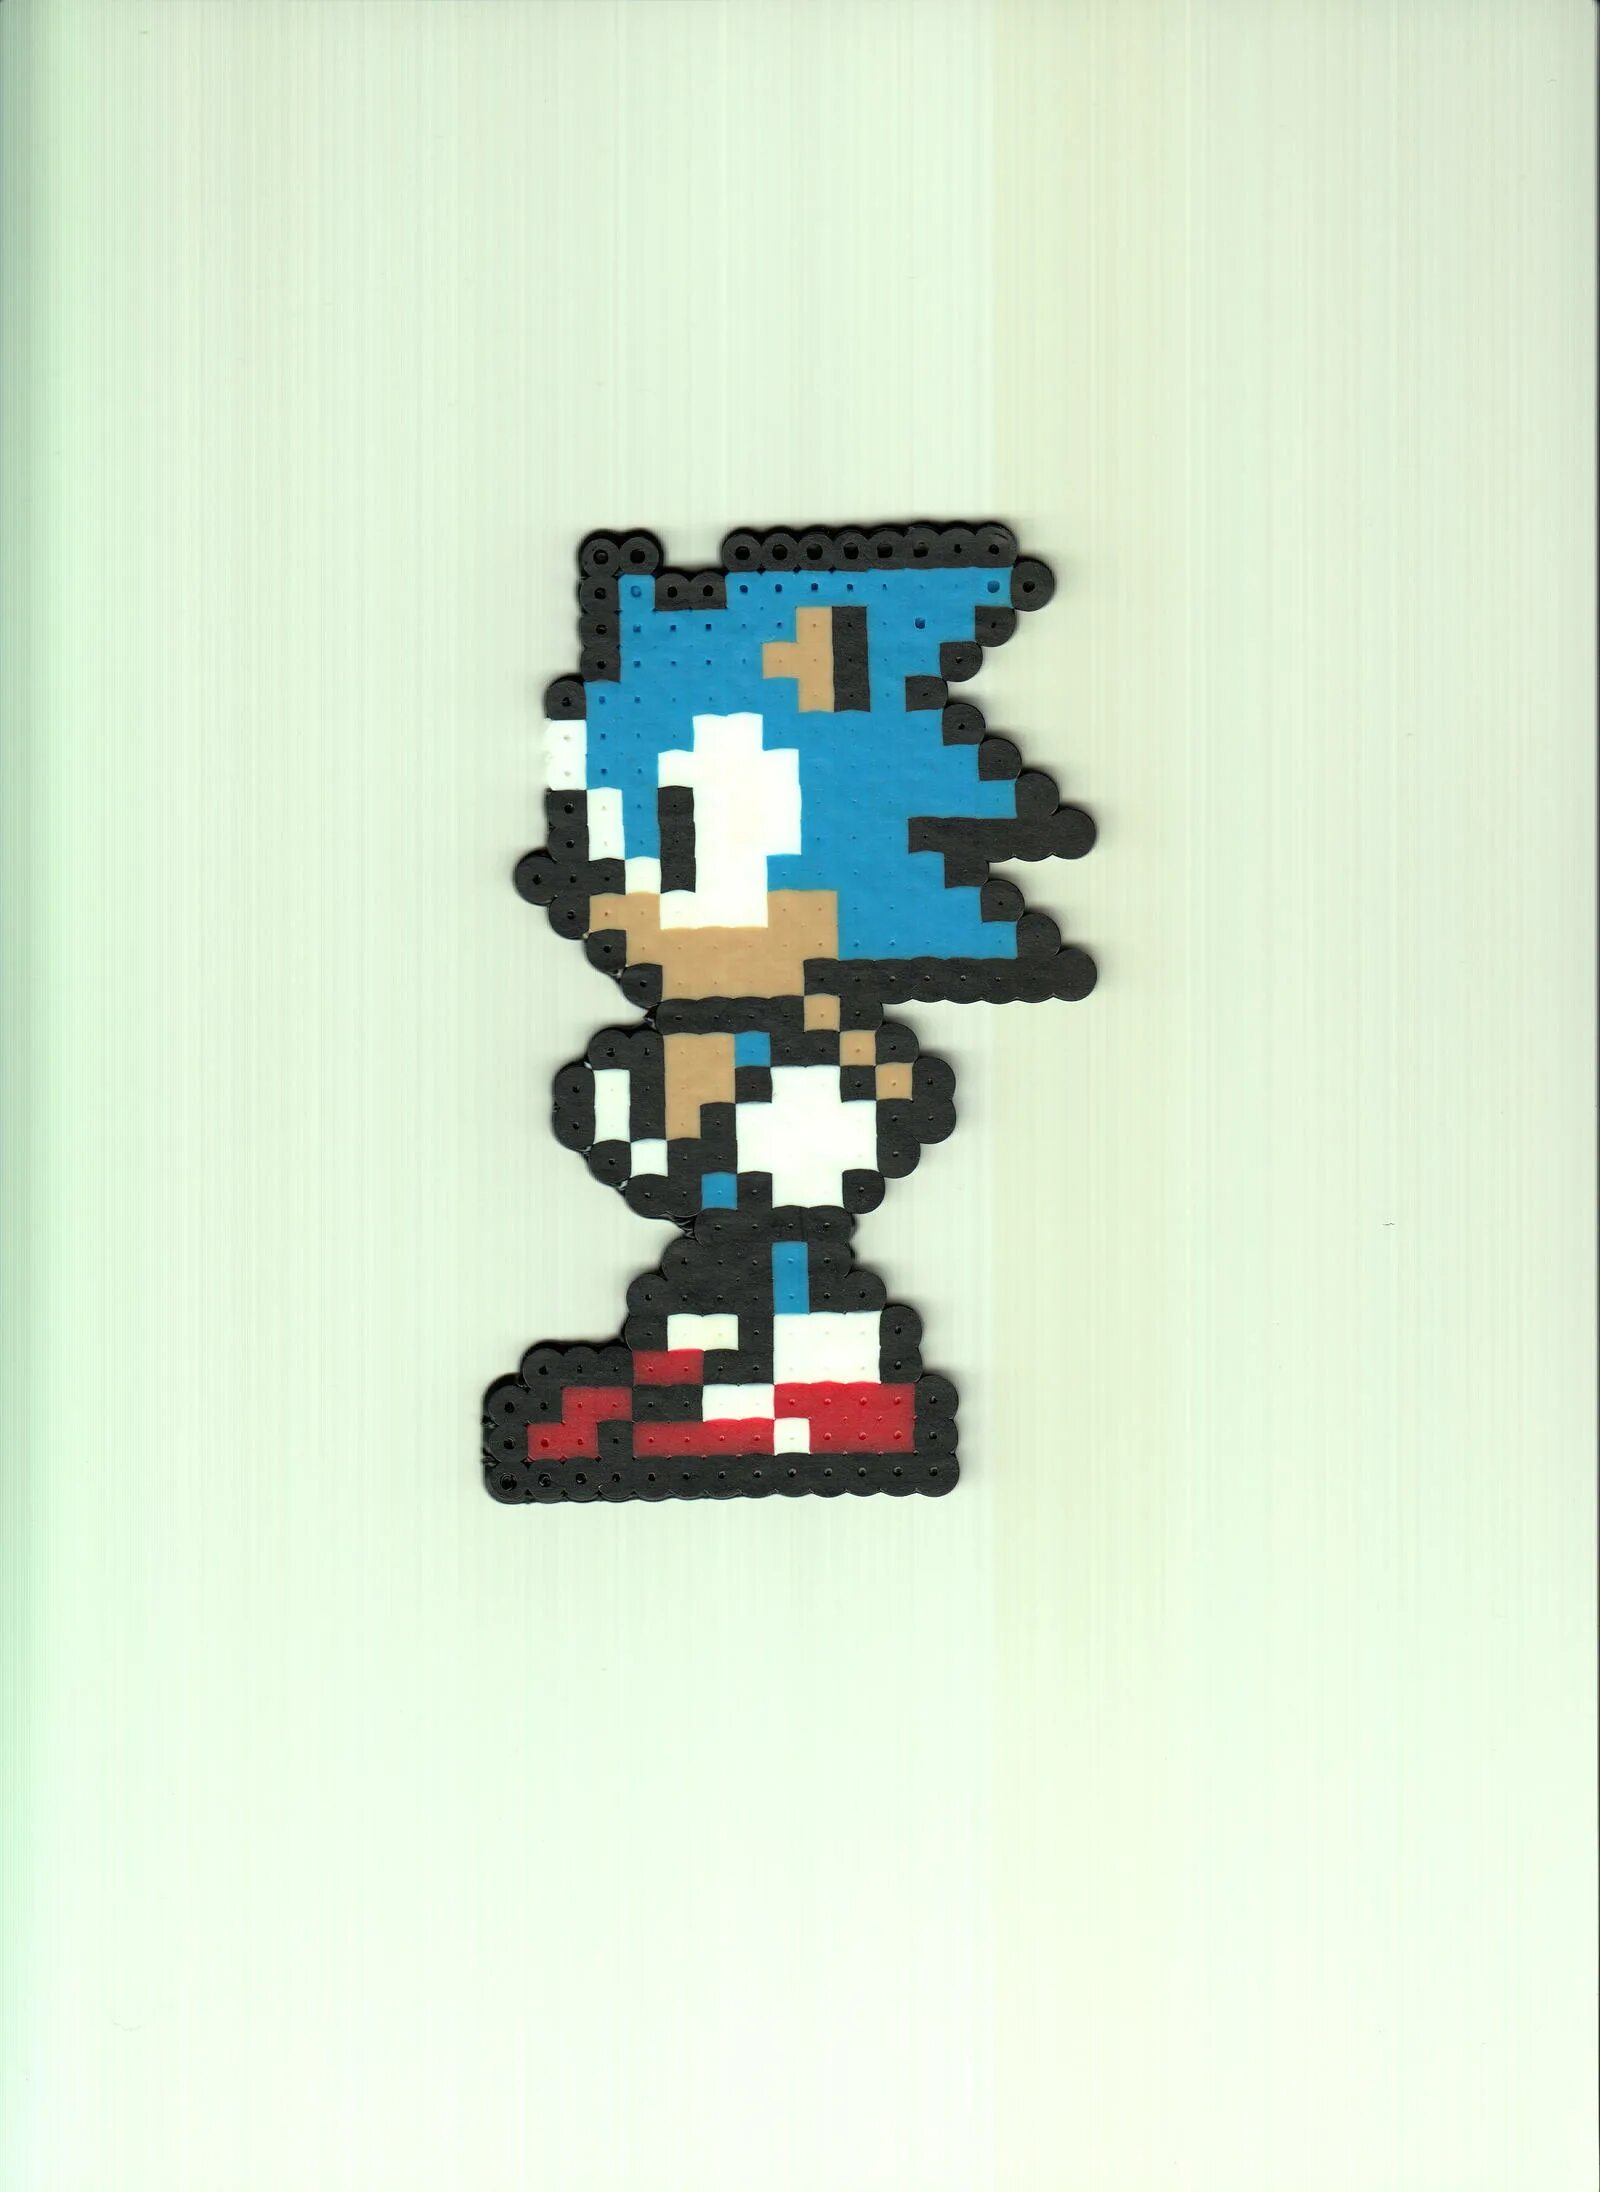 Соник 8 бит. Соник 16 бит. 8 Битный Соник. Sonic 8 бит. Classic Sonic 8 bit.